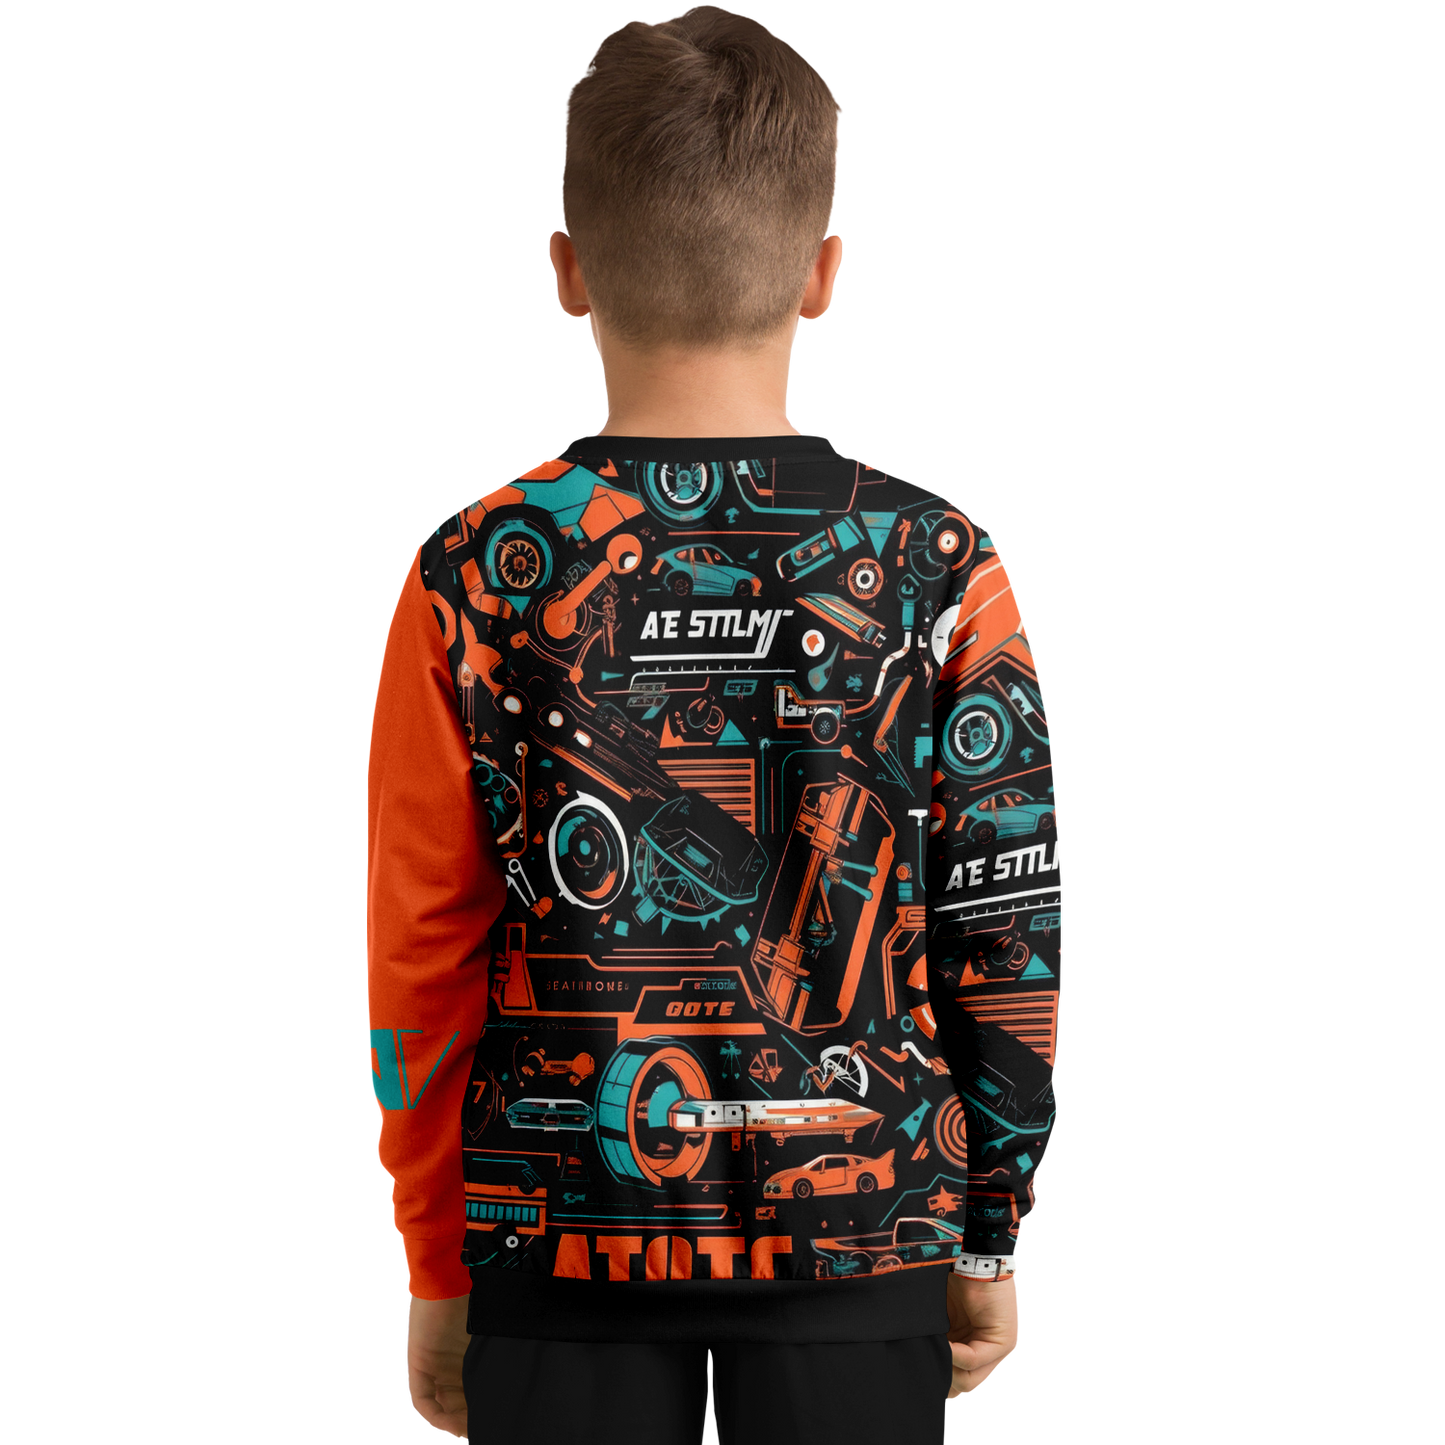 Athletic Kids/Youth Sweatshirt – AOP 008